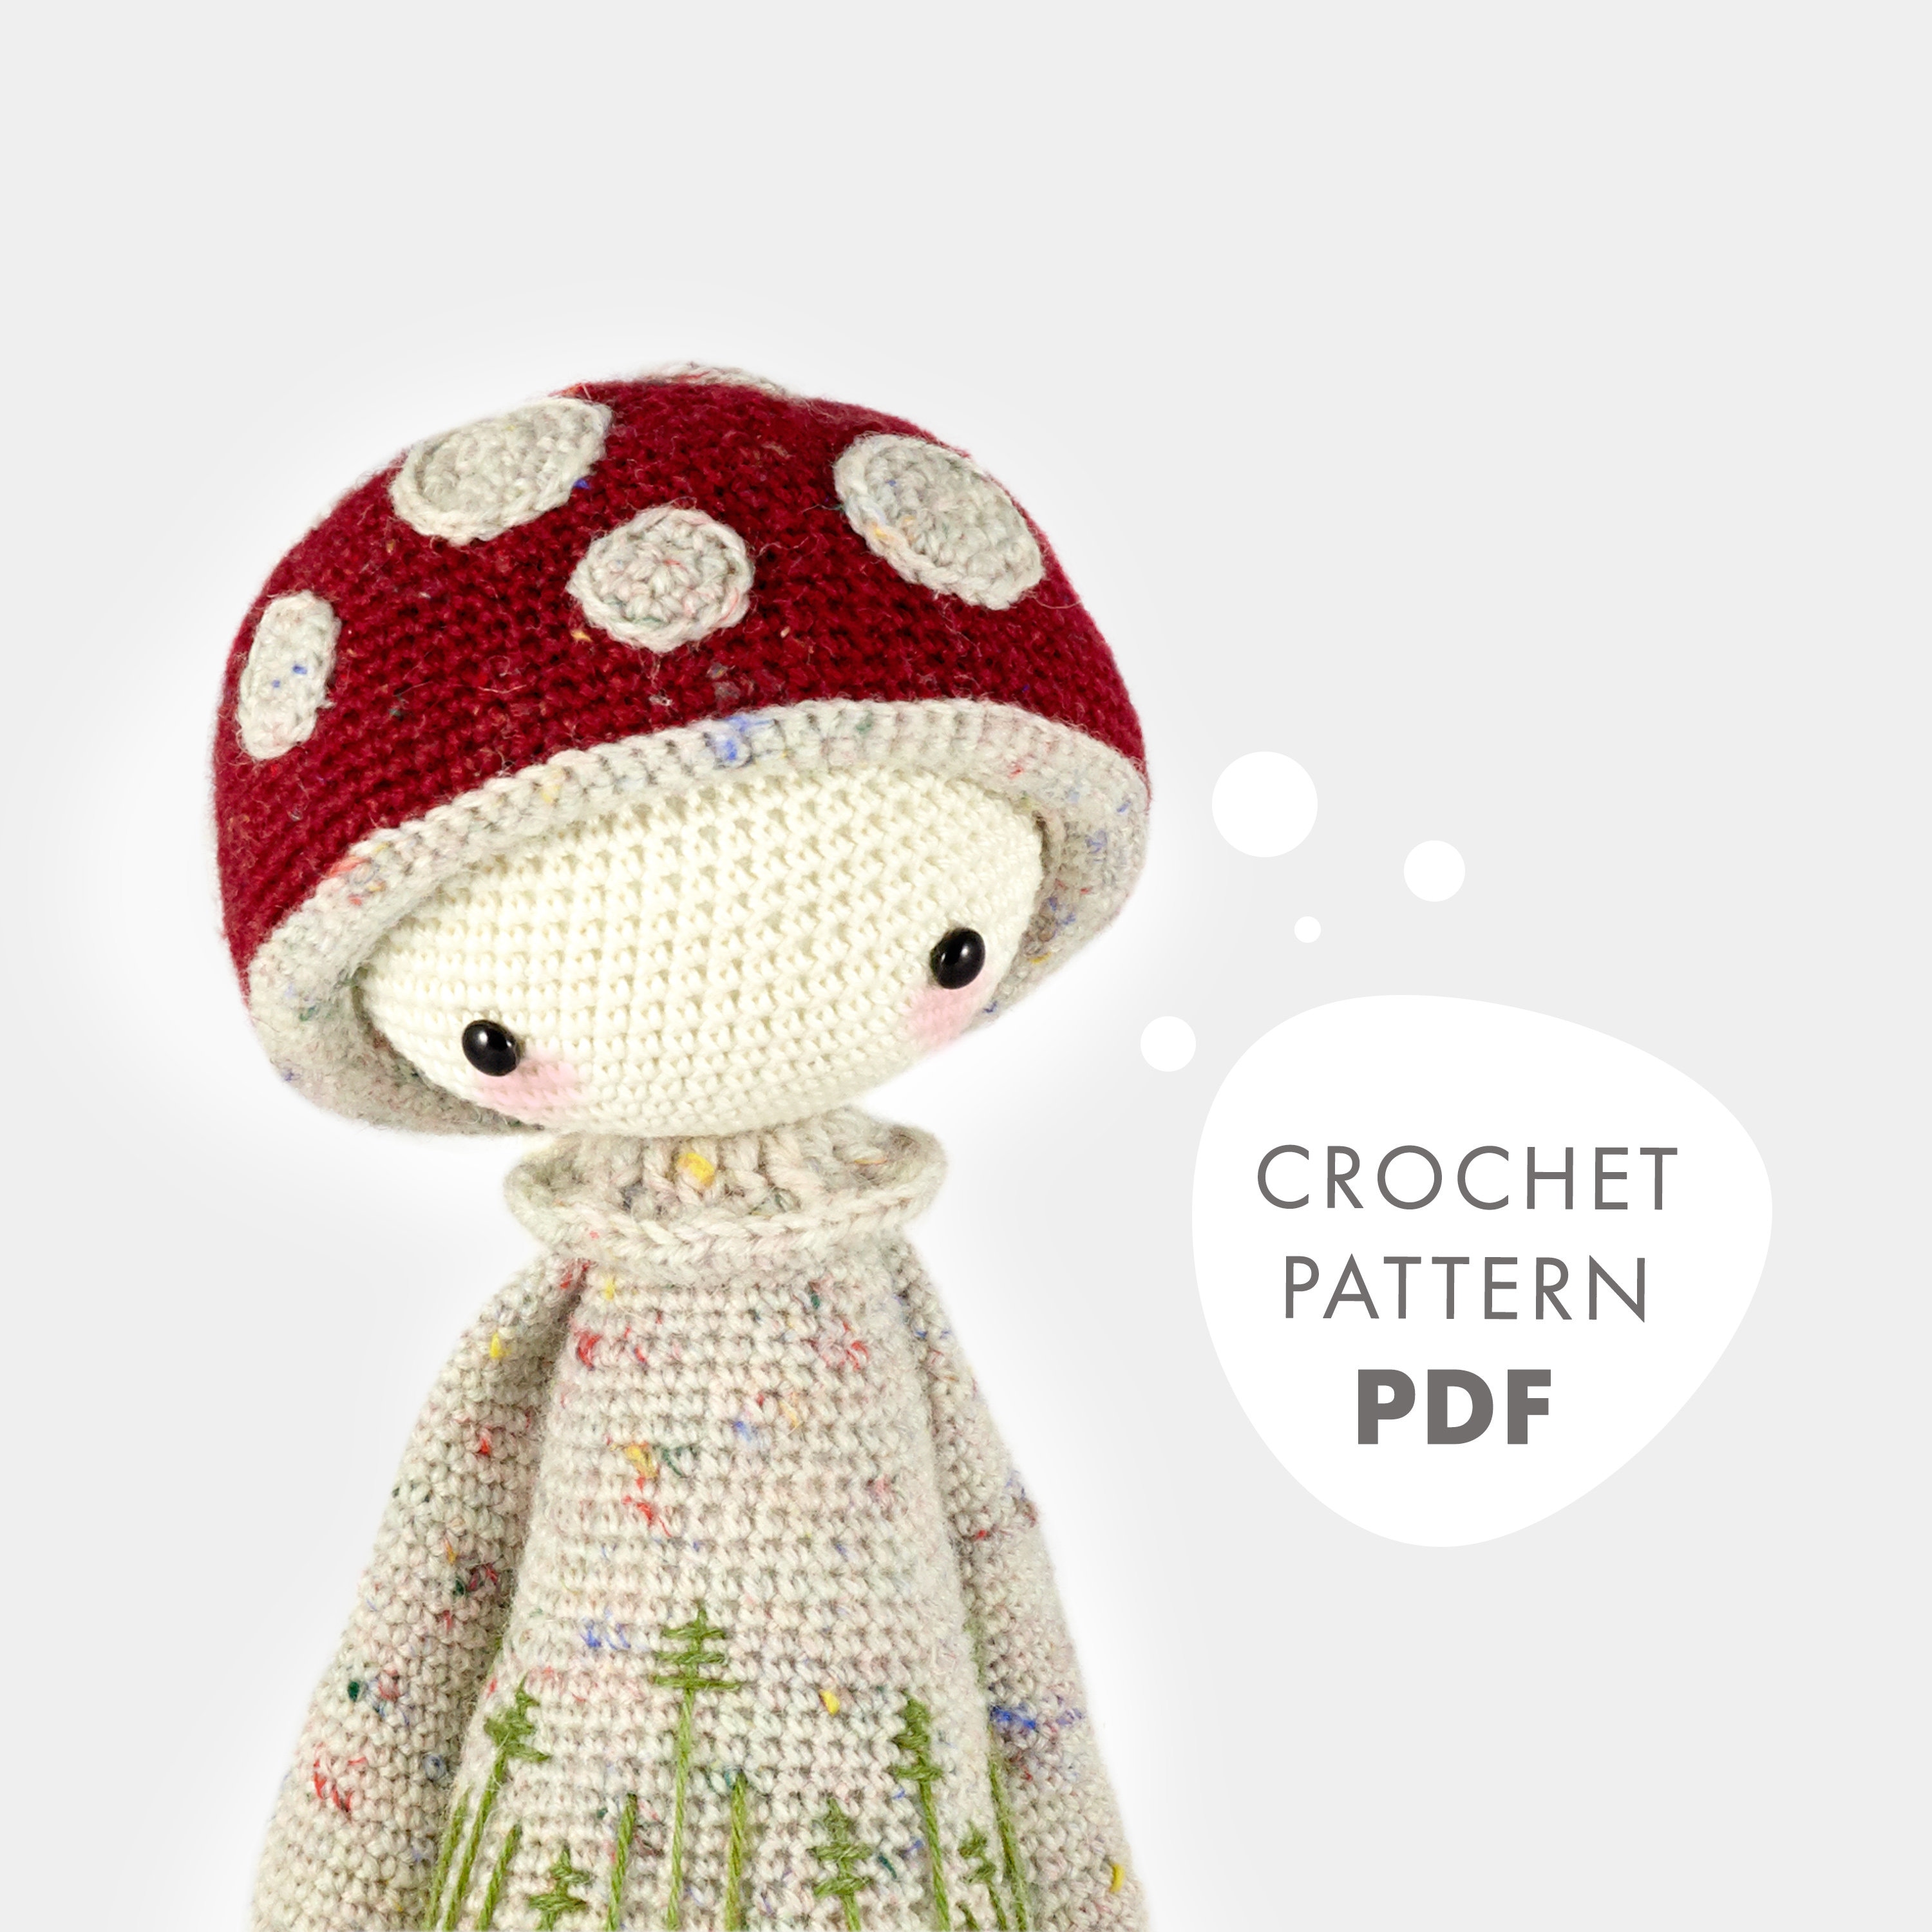 Crochet Mushroom Pattern A 2-in-1 Amigurumi Mushroom Doll Tutorial 